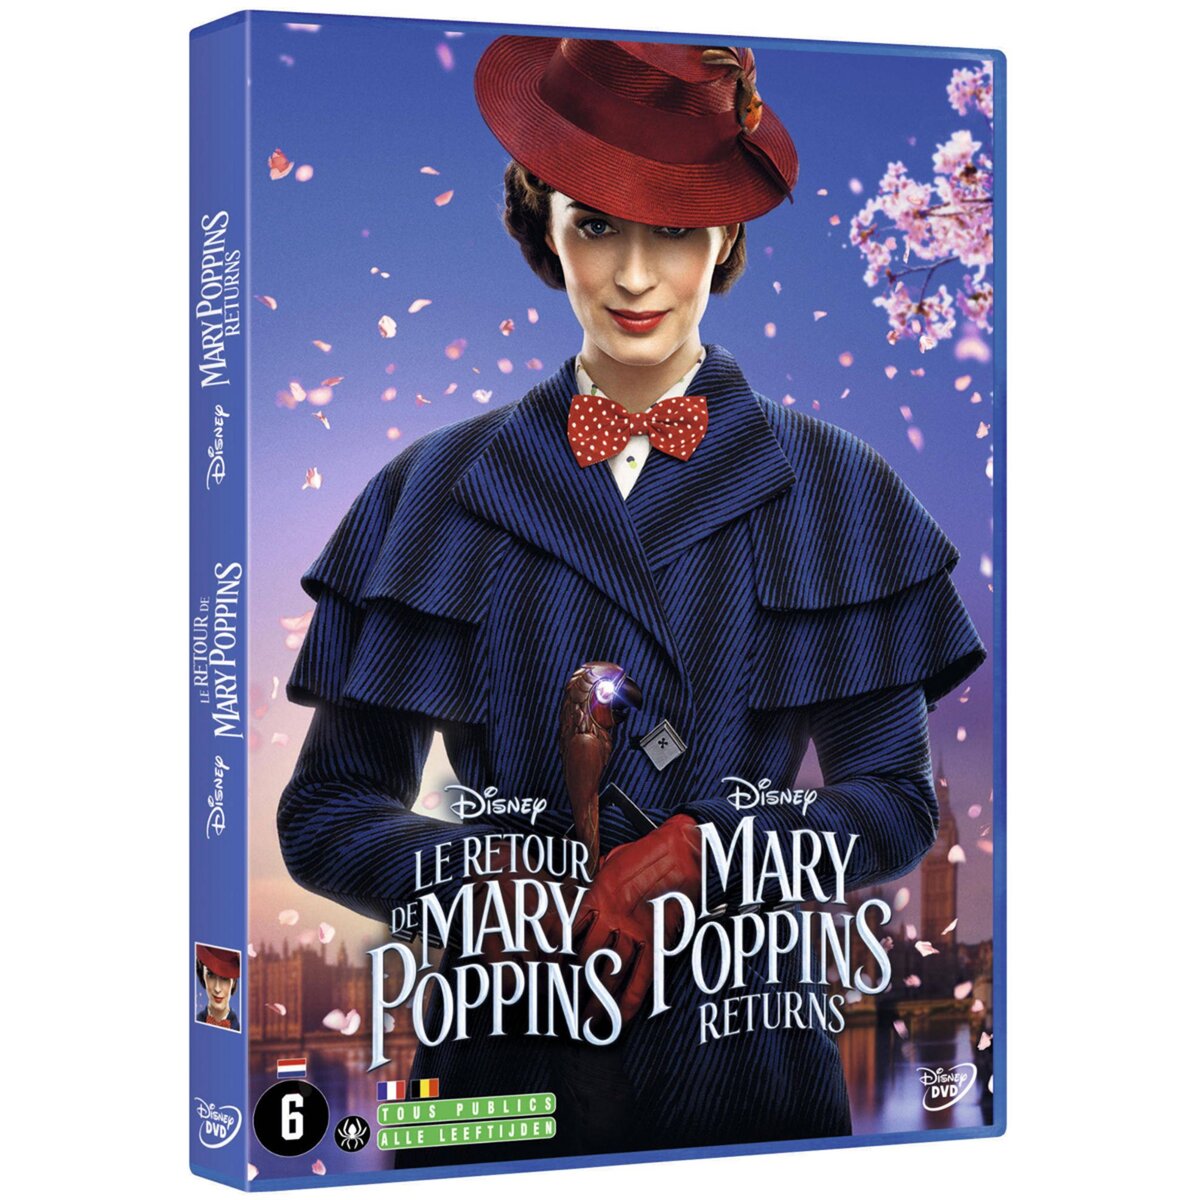 Le Retour de Mary Poppins DVD